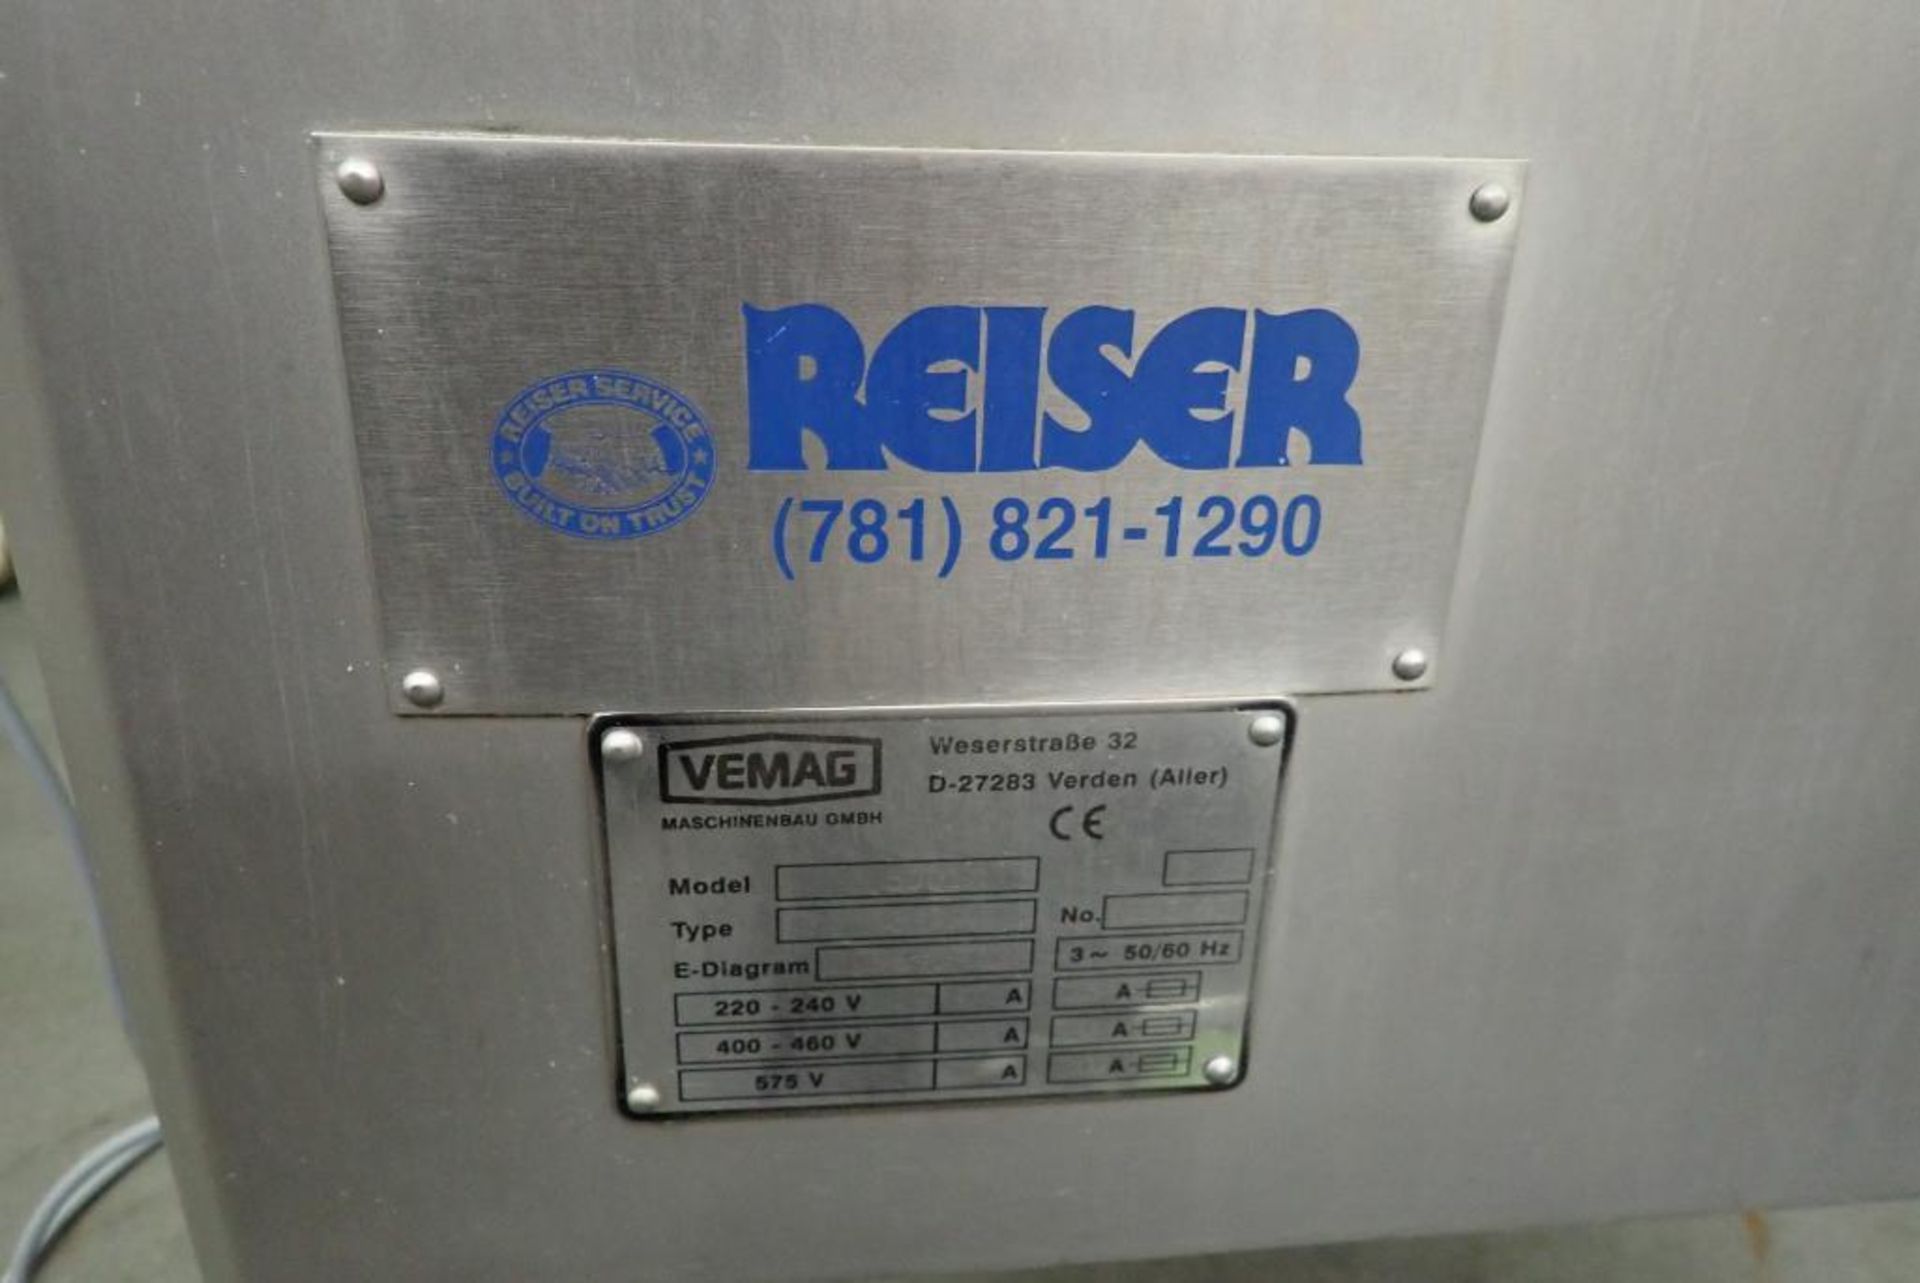 Reiser Vemag 500 vacuum filler - Image 26 of 33